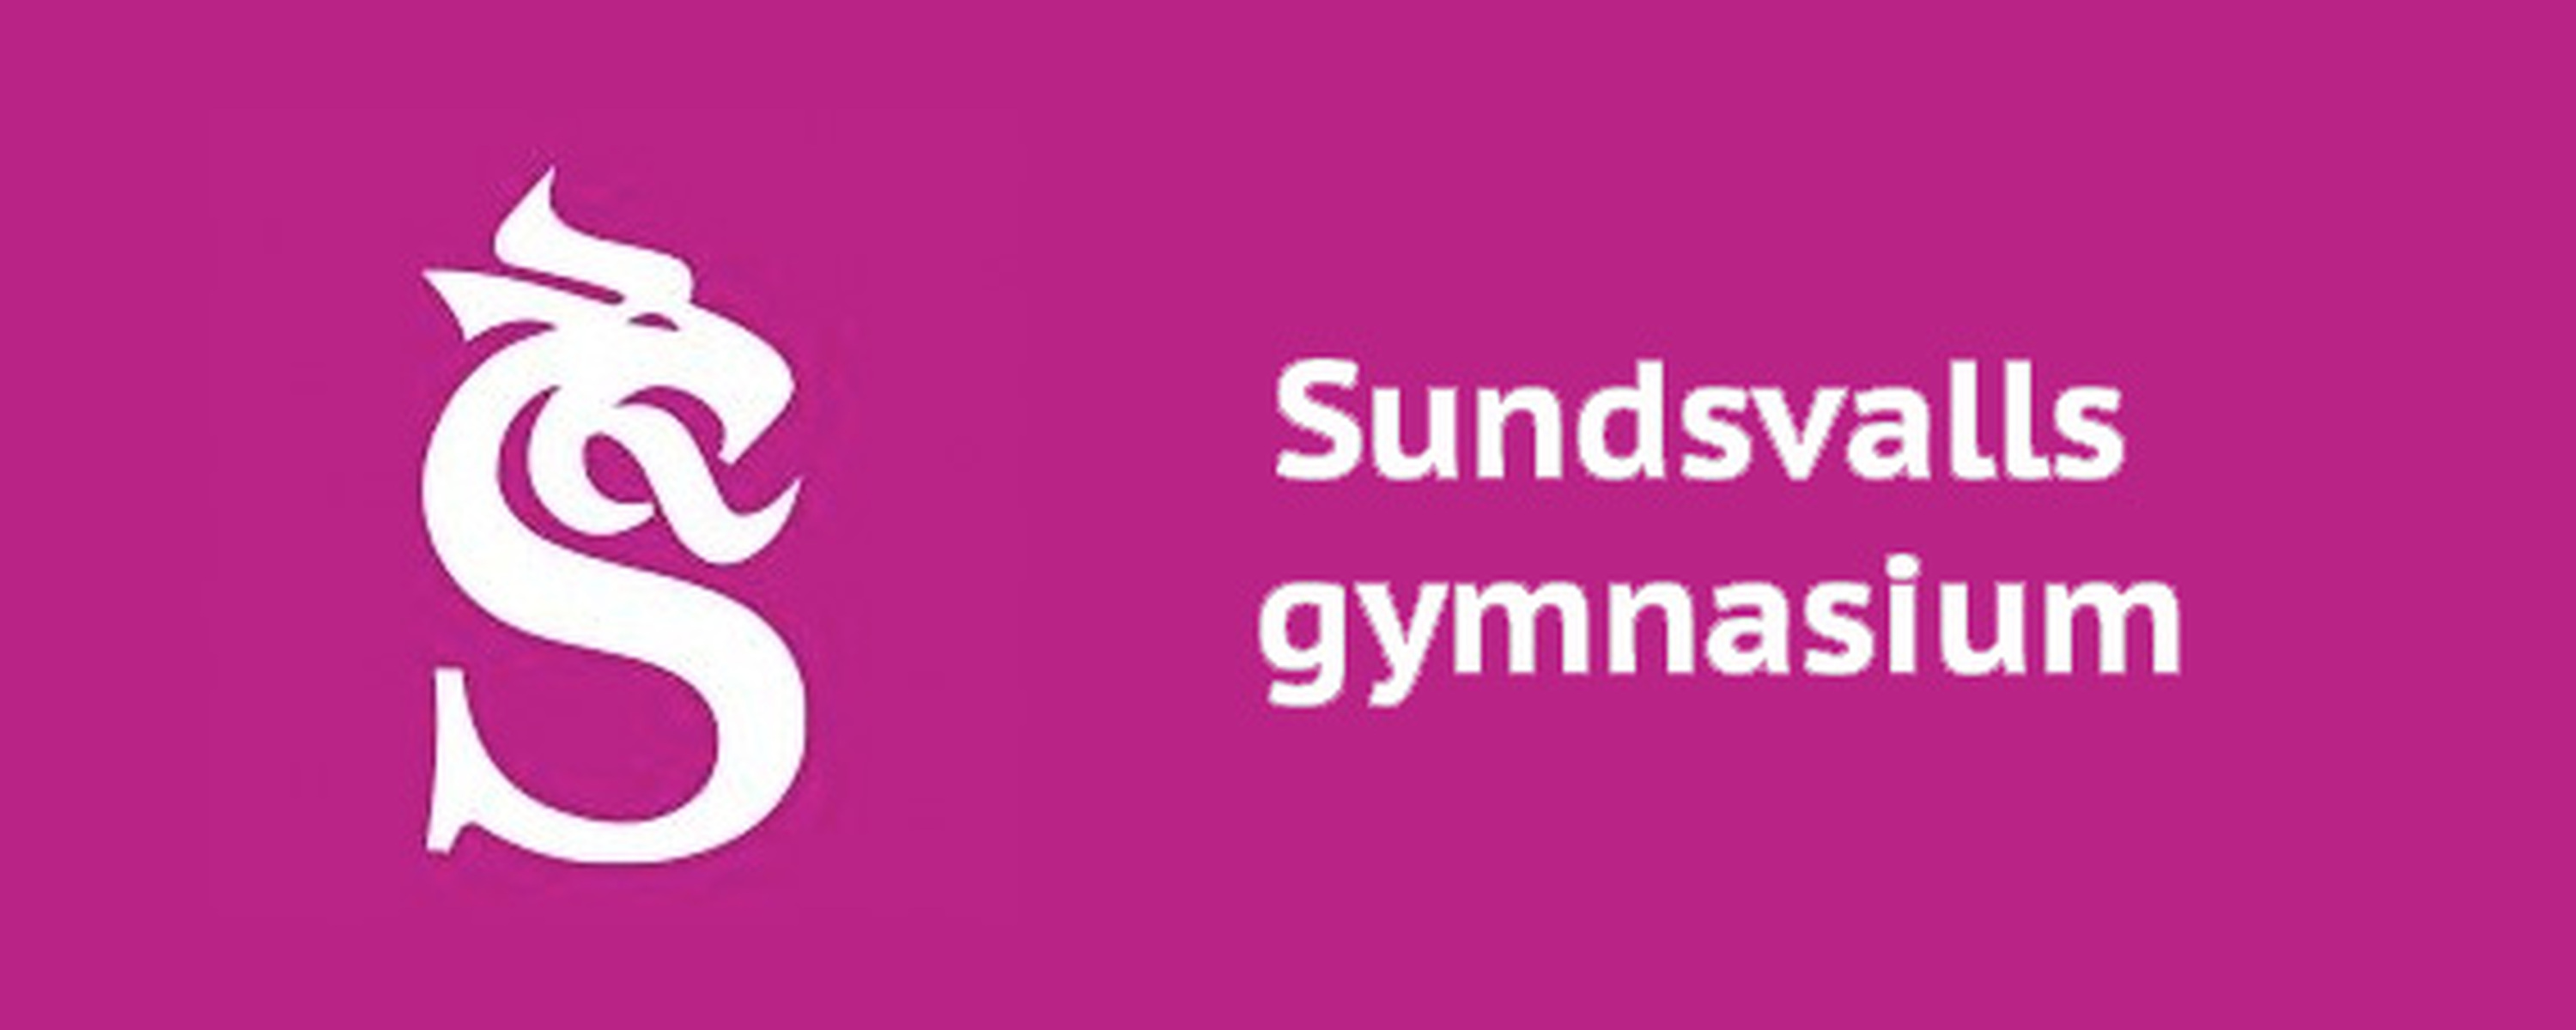 Sundsvalls gymnasium